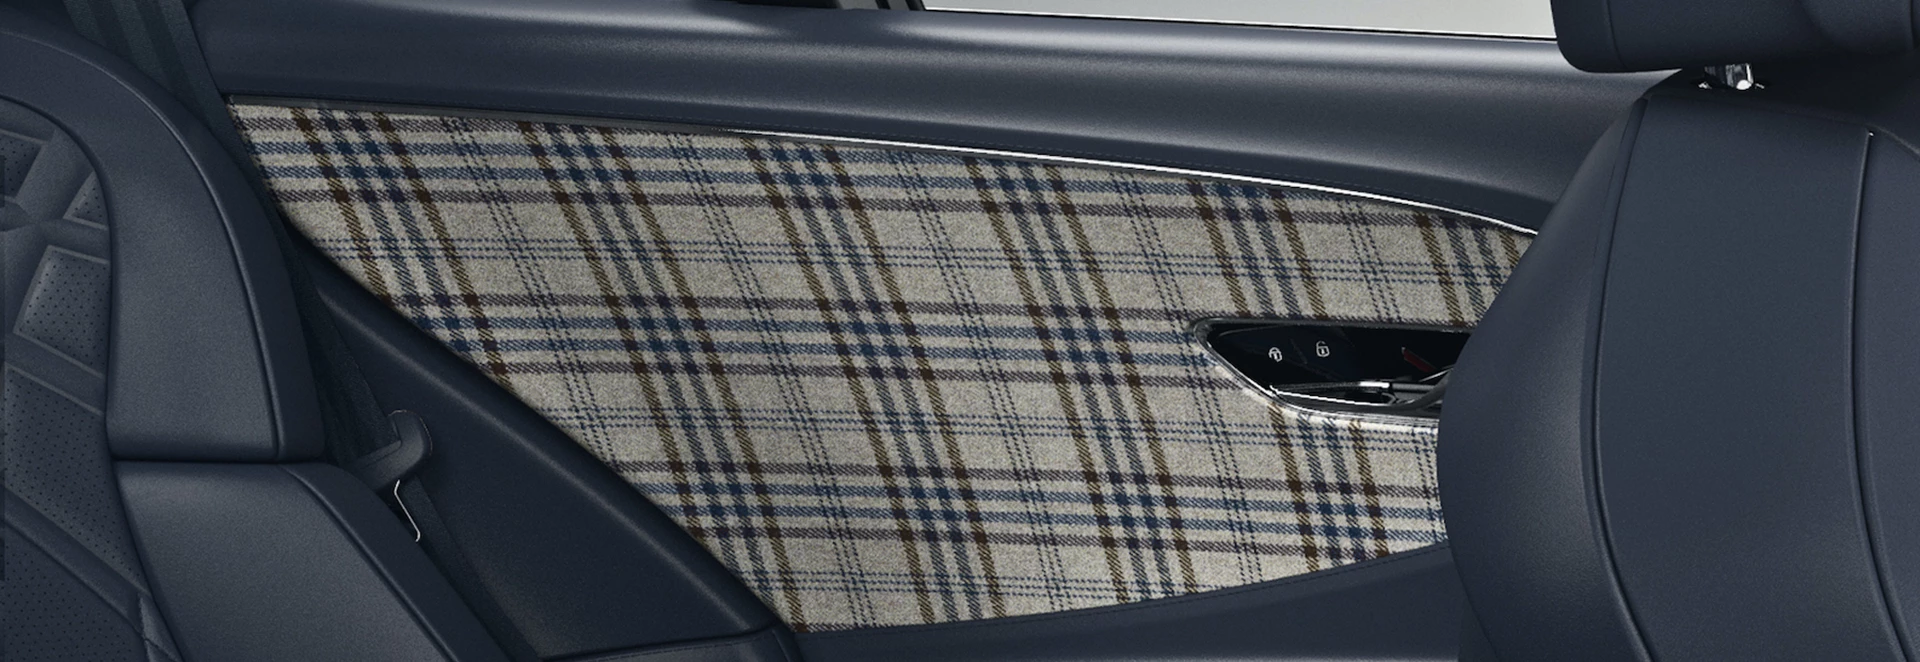 Bentley Mulliner offers new tweed interior options 